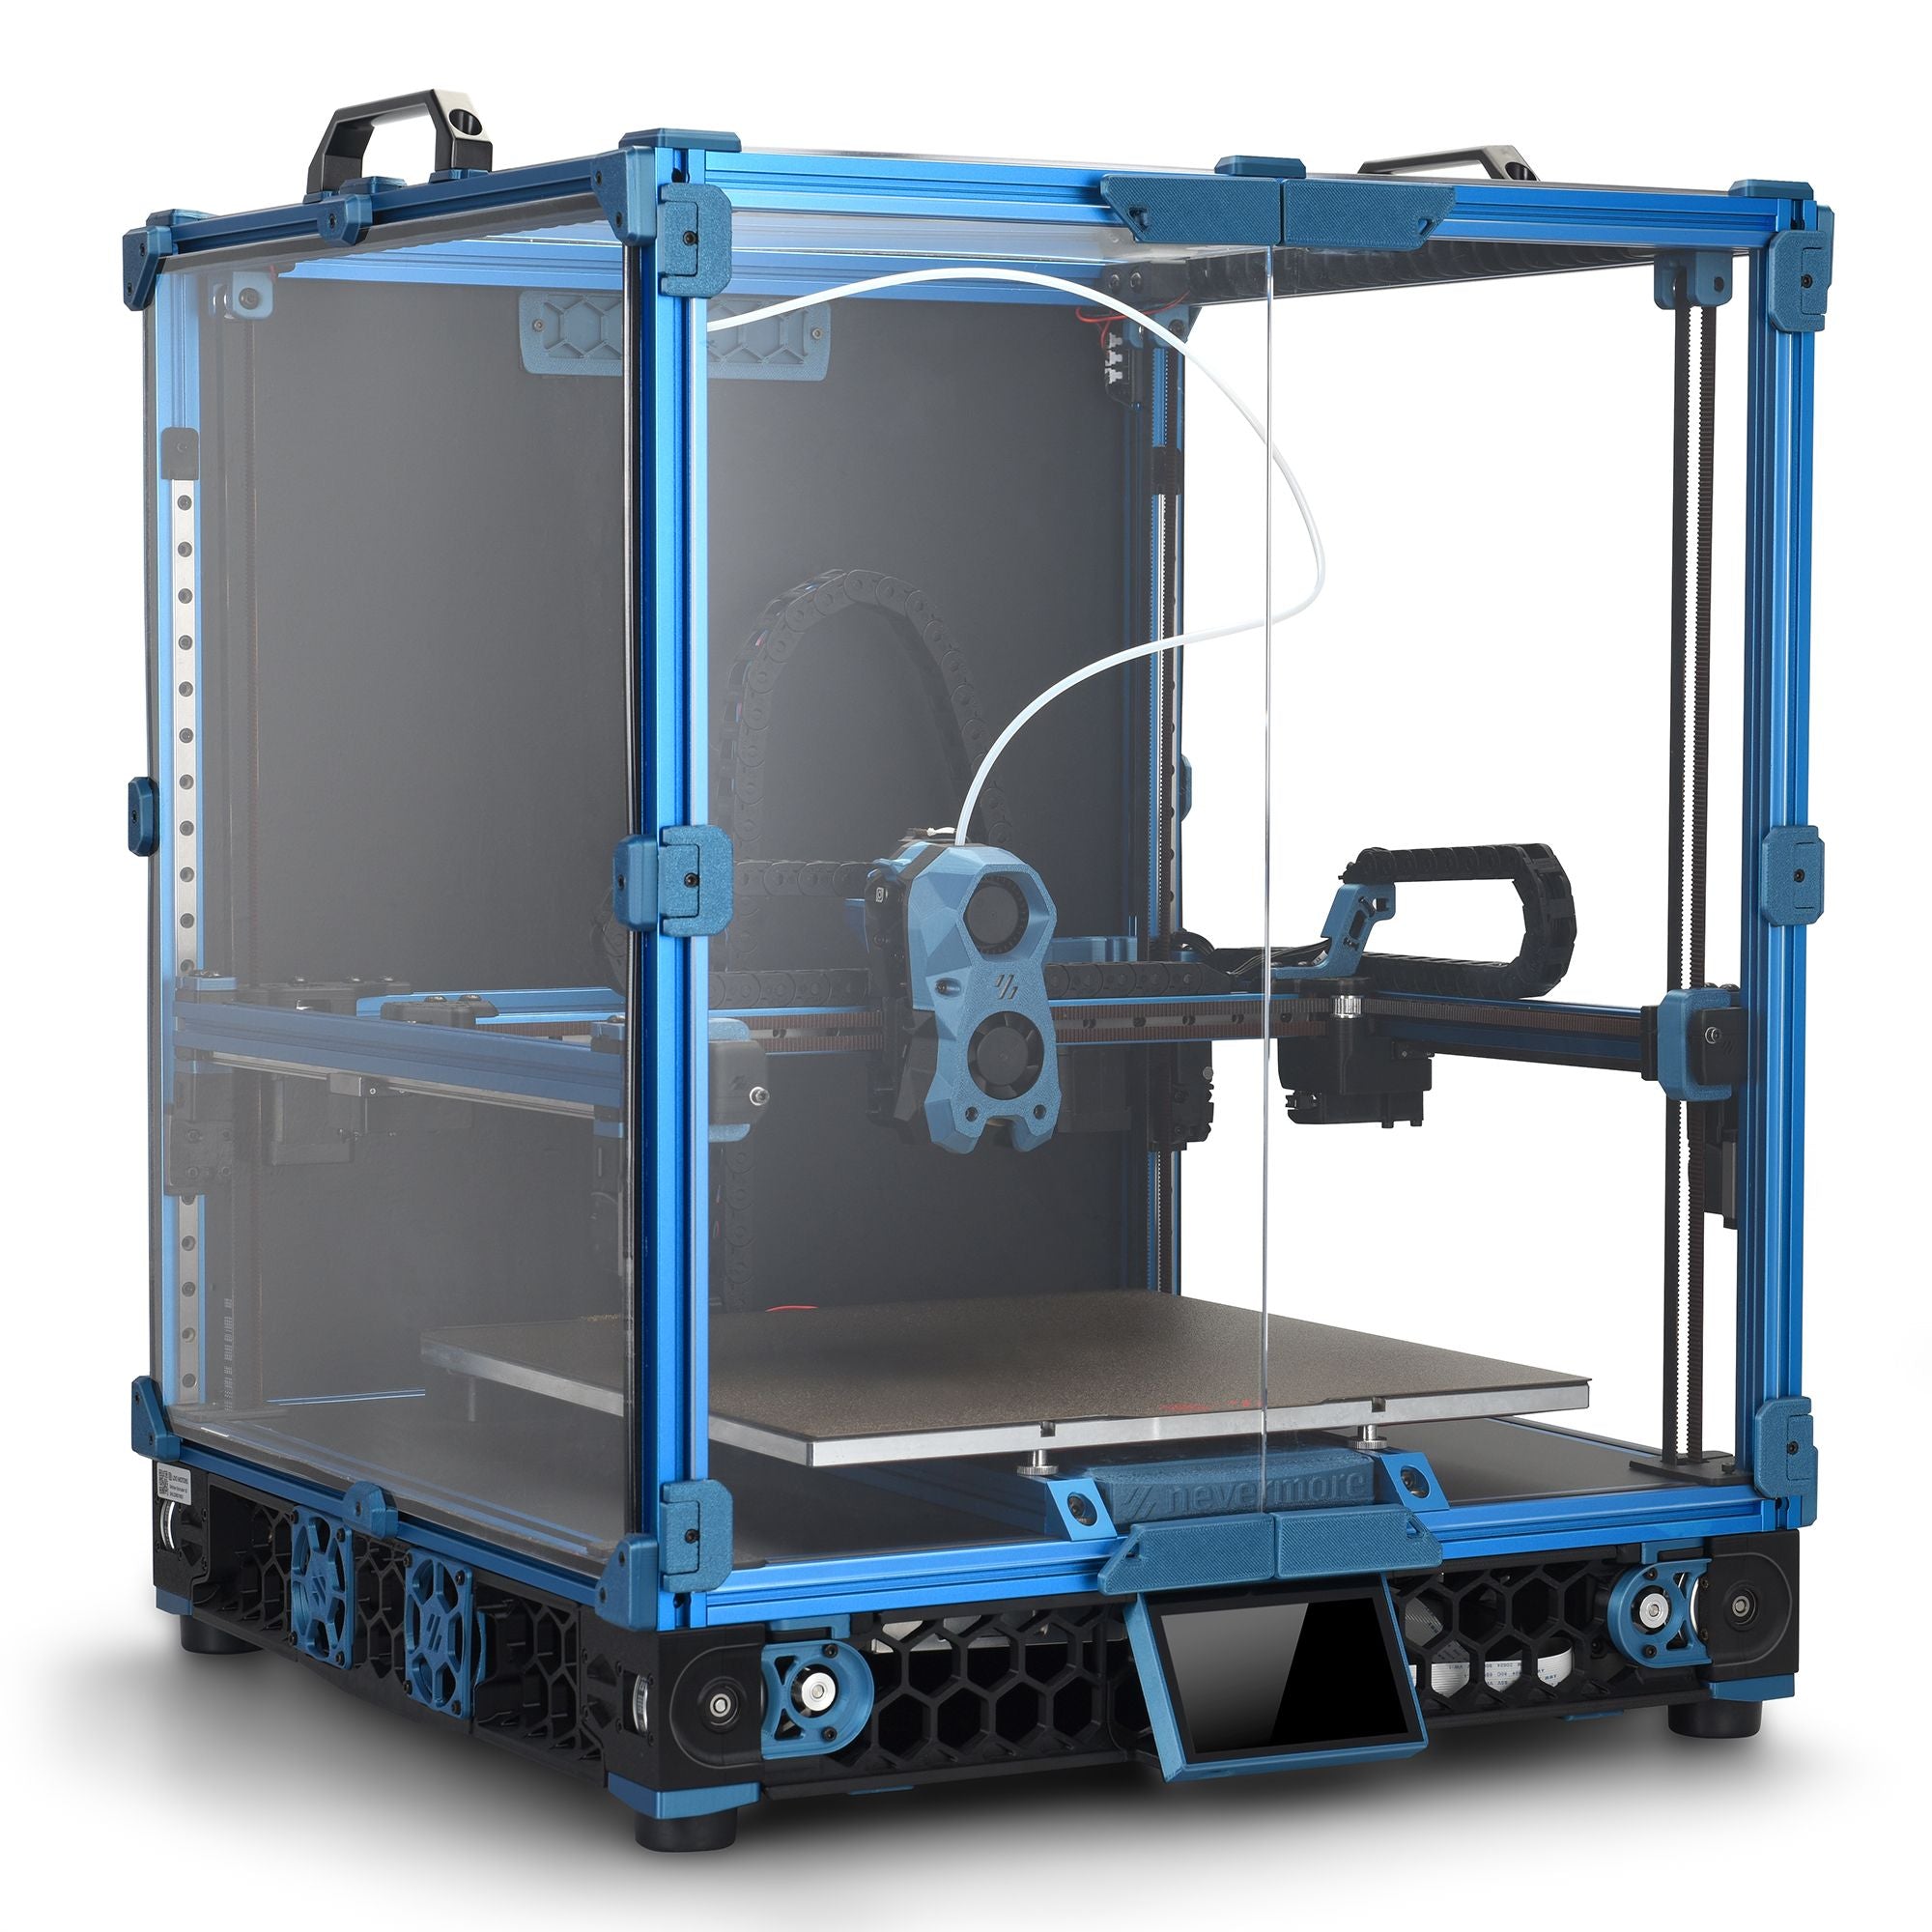 *In Stock* LDO Voron V2.4r2 C Edition 3D Printer Kit - 350